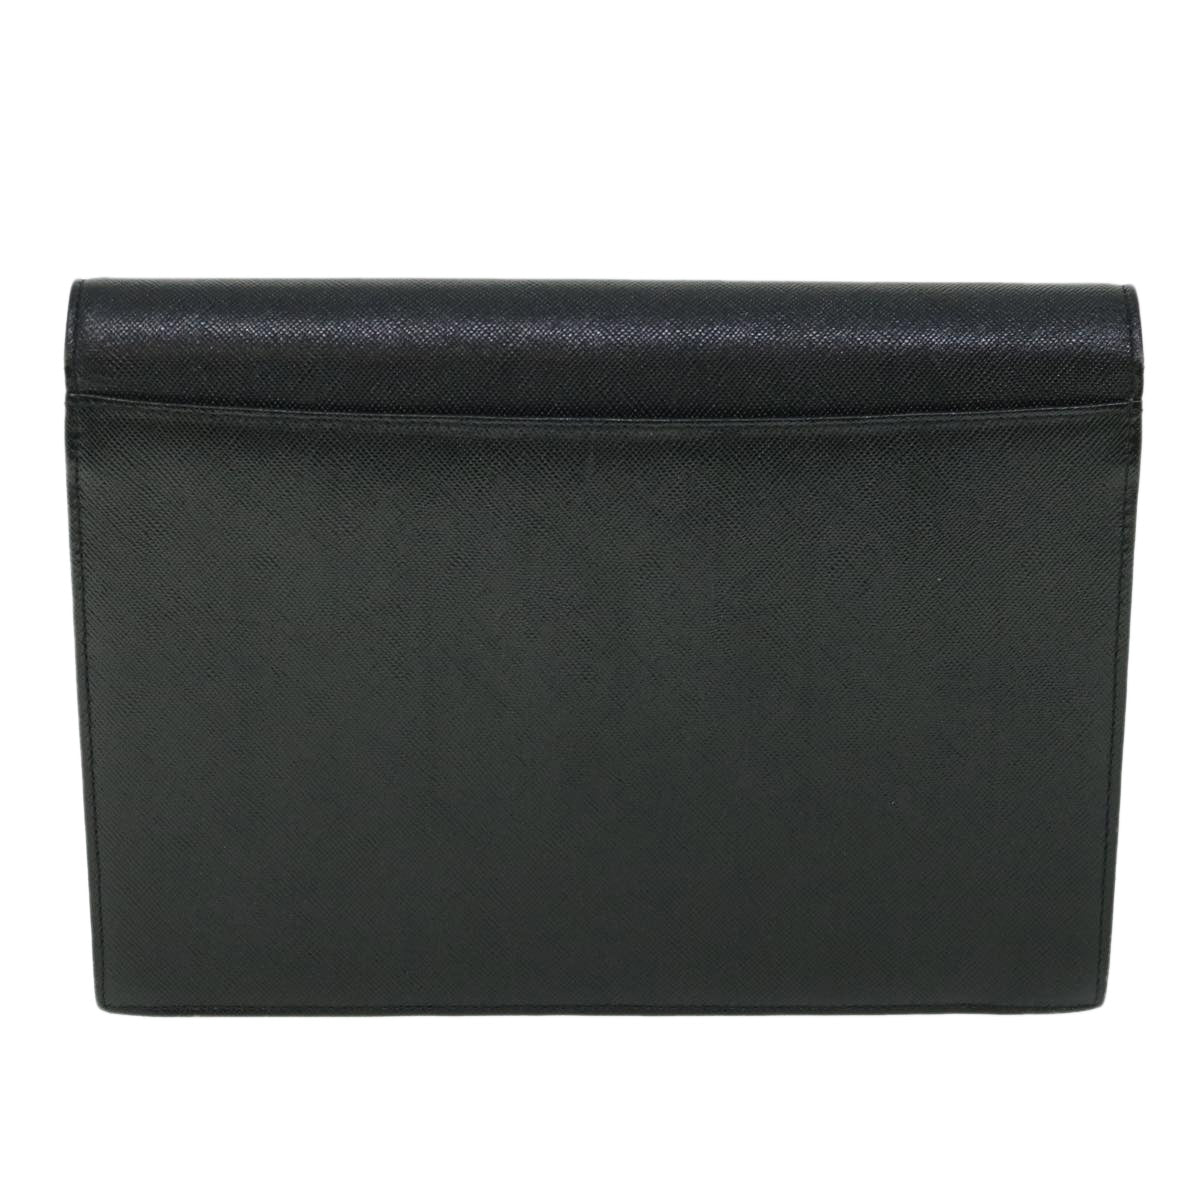 SAINT LAURENT Clutch Bag Leather Black Auth 54958 - 0